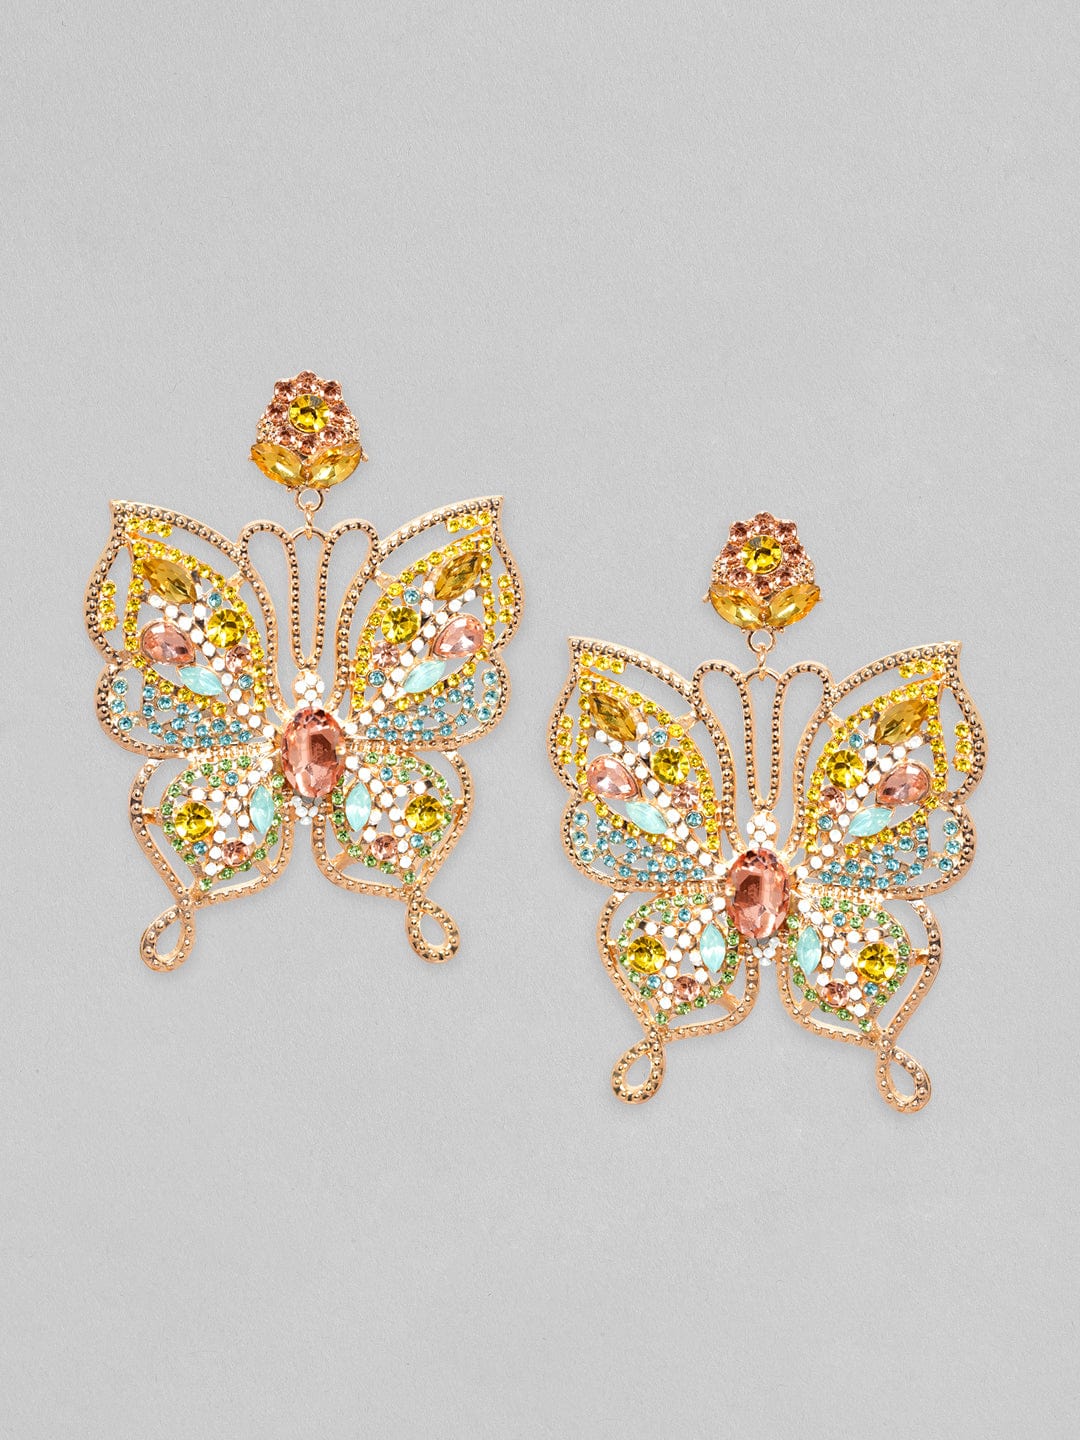 Spread Your Wings Earrings - Gold – Gold butterfly hoop earrings – BaubleBar